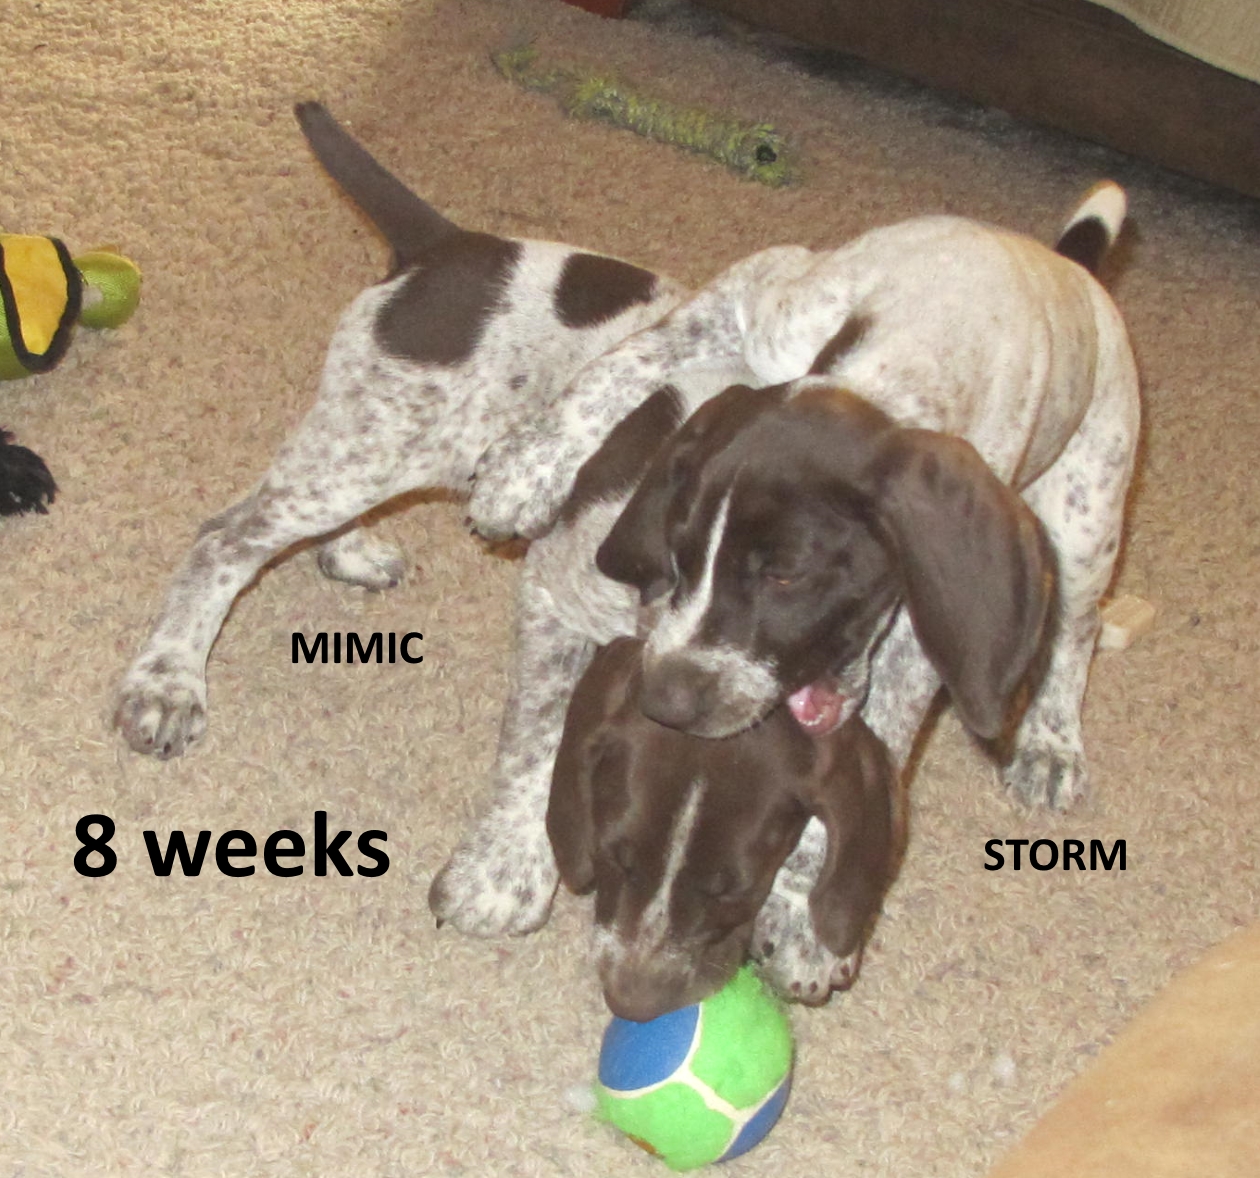 Mimic+Storm-8weeks.jpg